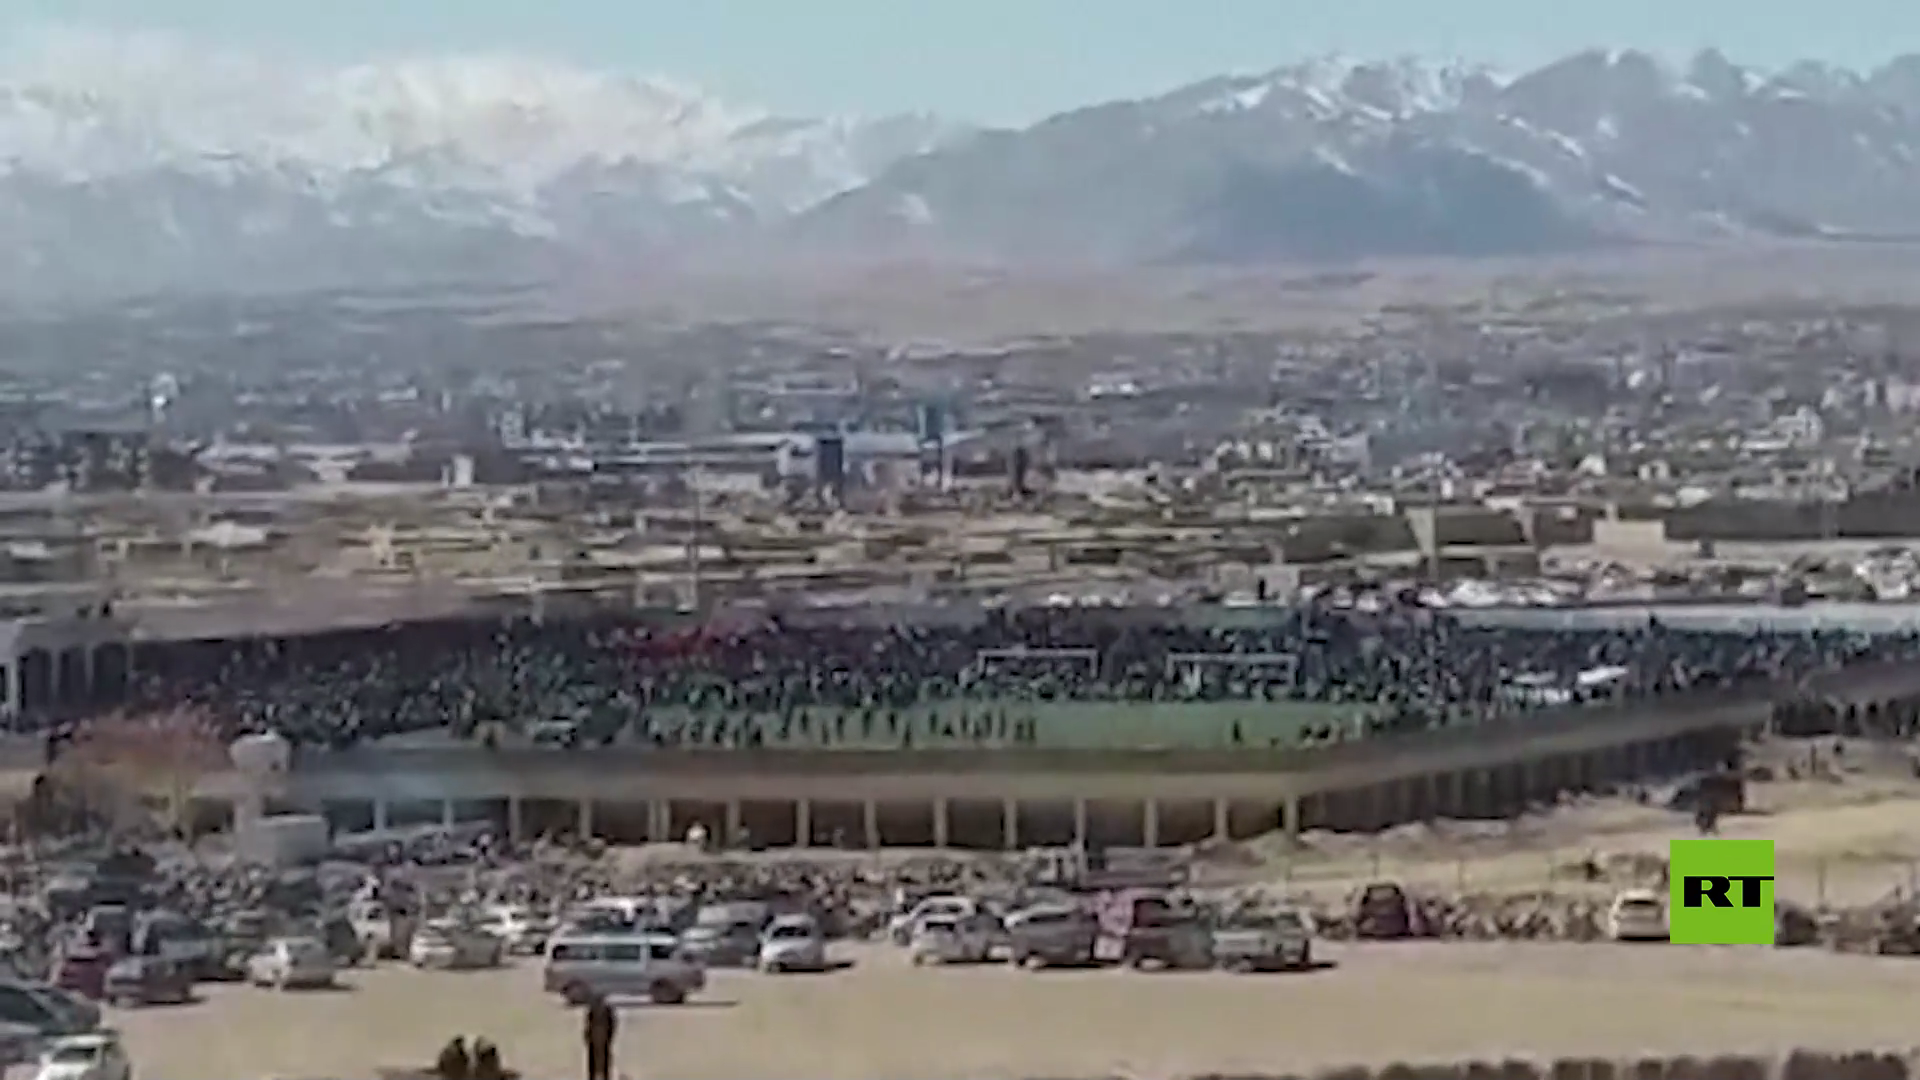 بالفيديو.. طالبان تنفذ إعداما علنيا في ملعب بمدينة غزني جنوب شرق أفغانستان